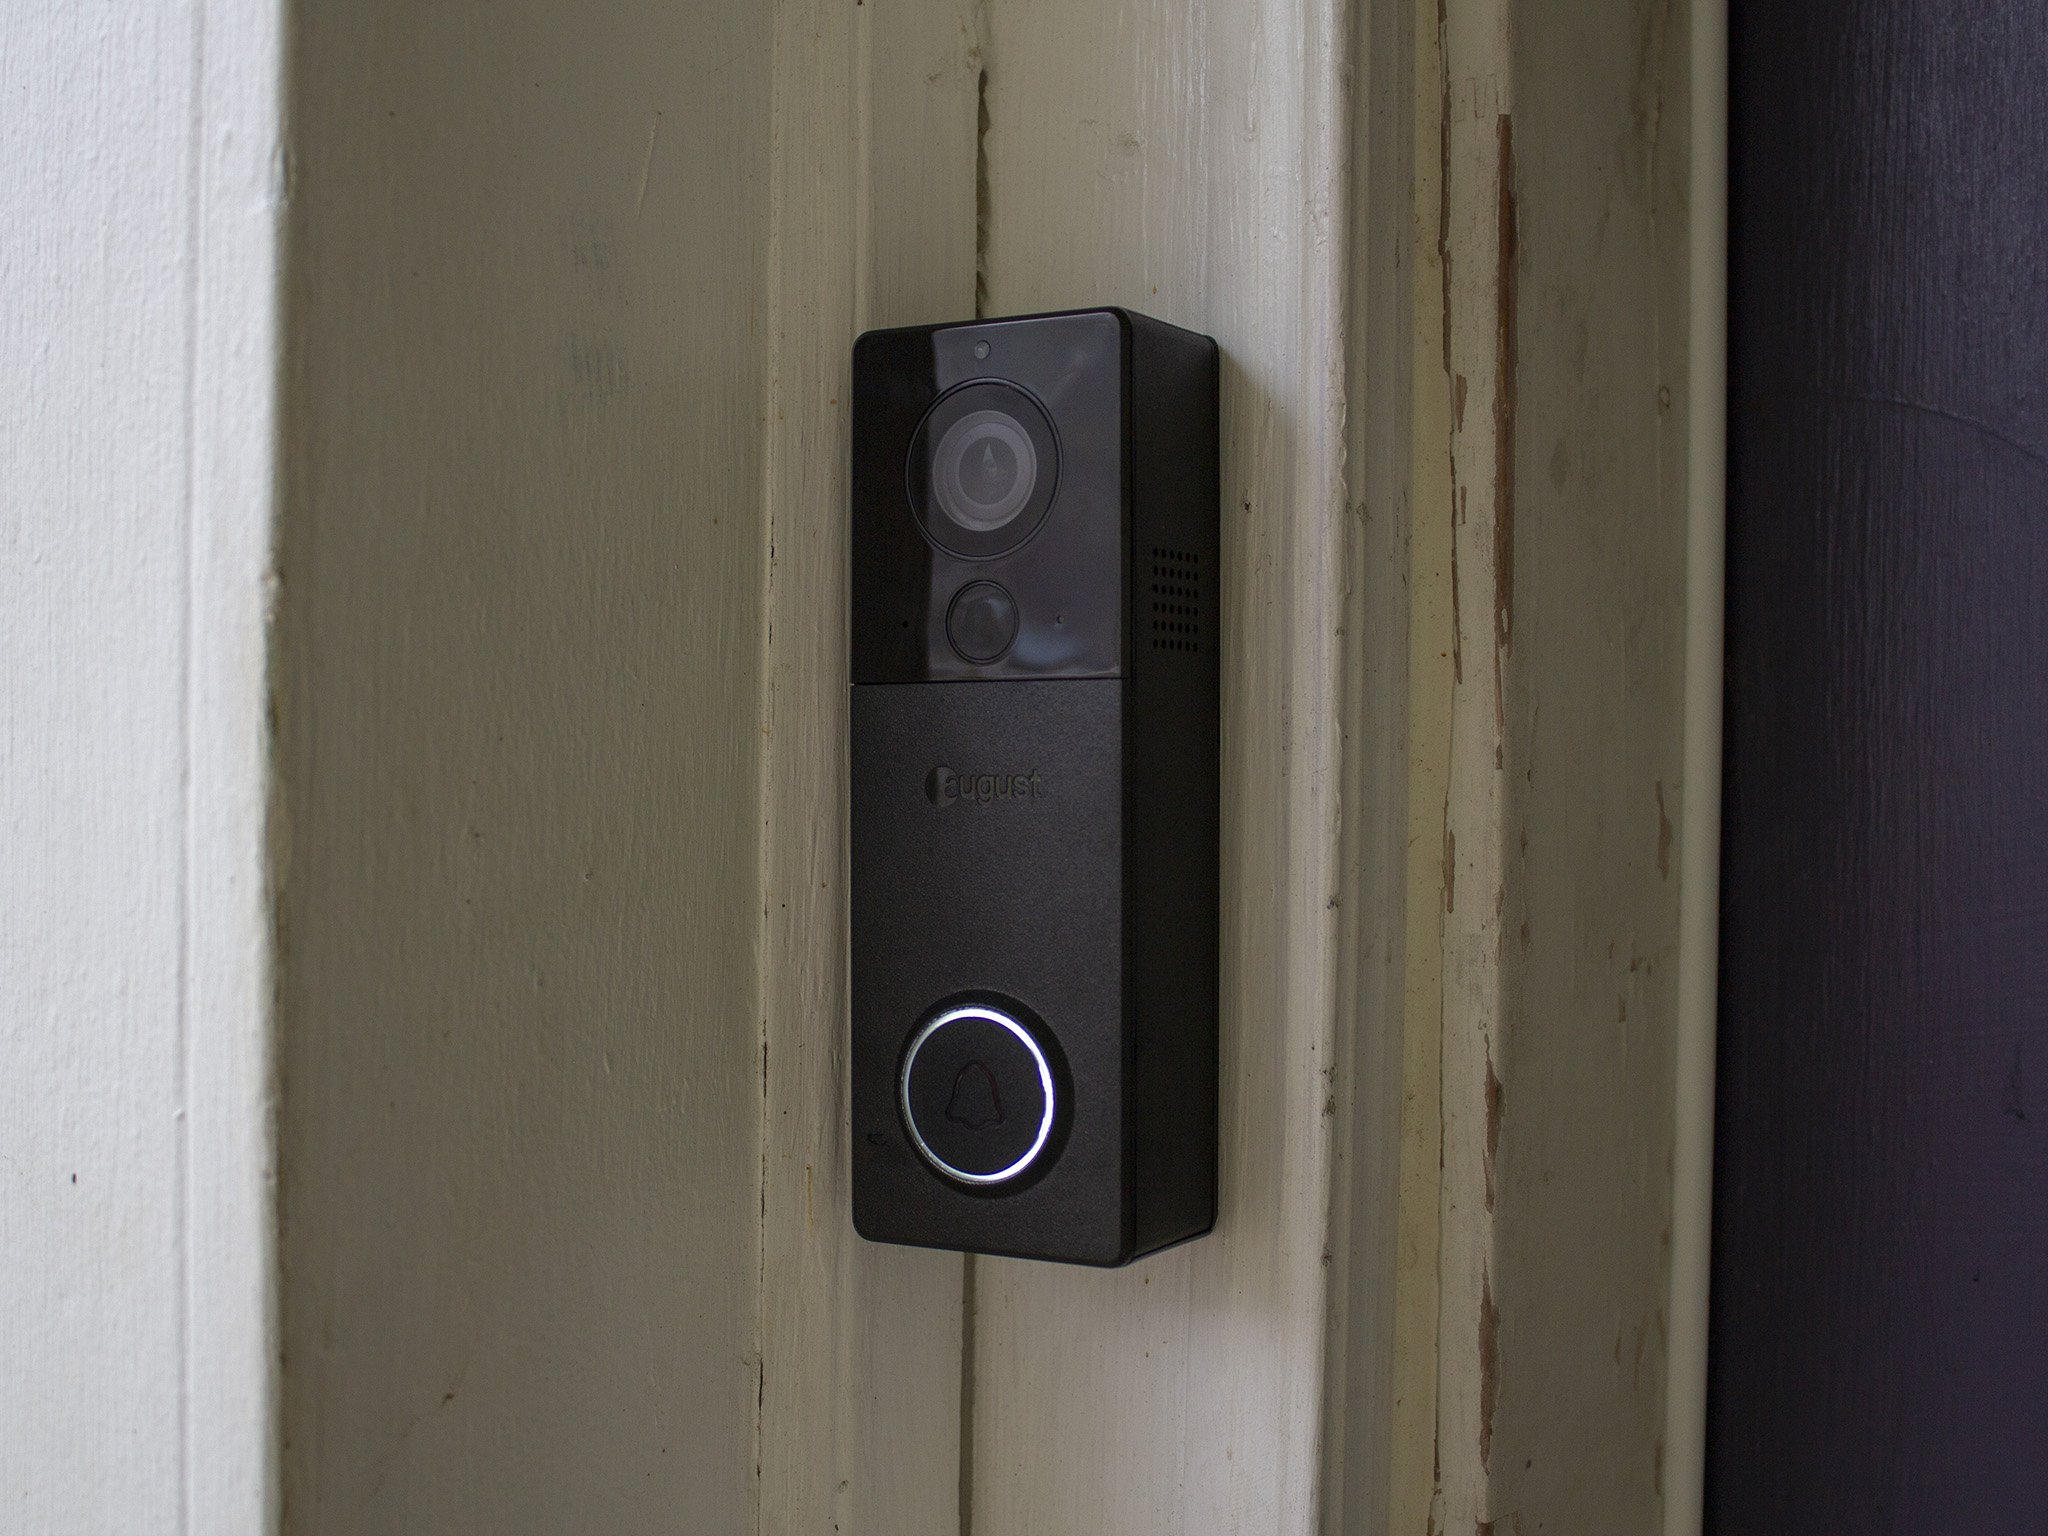 August View Video Doorbell